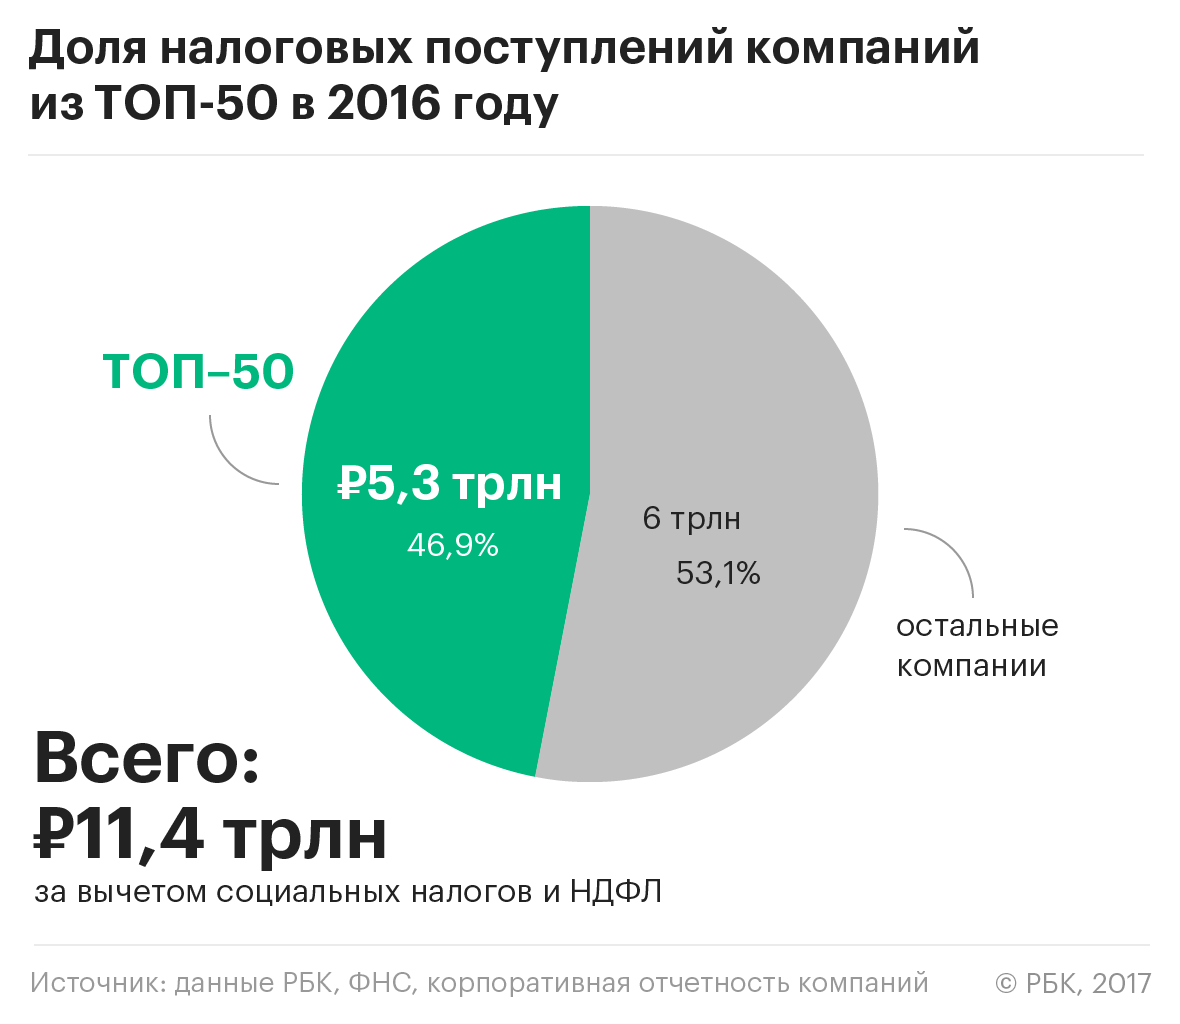 50 компаний обеспечили половину налоговых доходов бюджета России